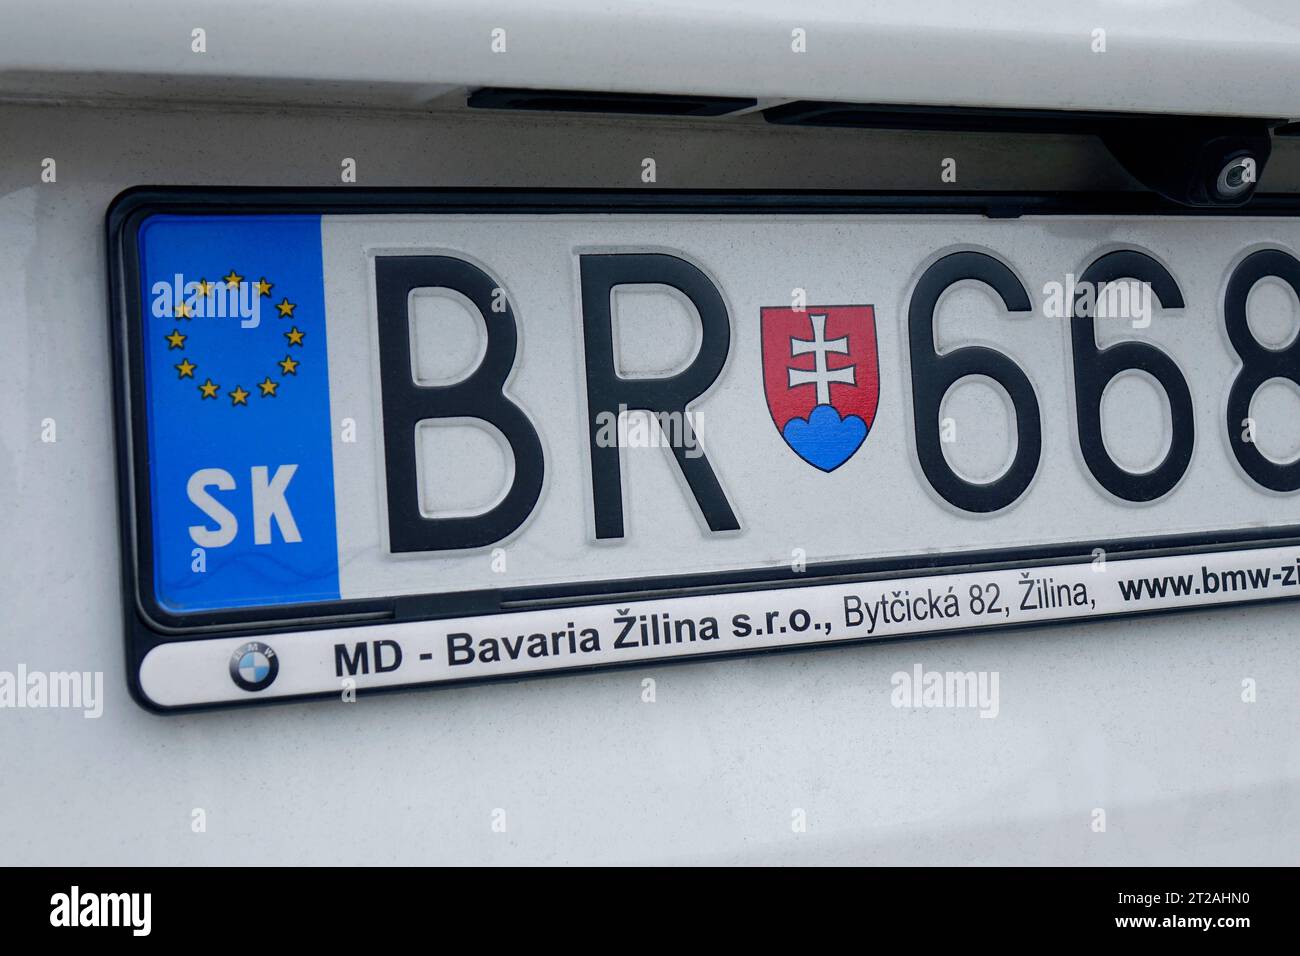 Autokennzeichen der Slowakei Autokennzeichen der Slowakei, 16.10.2023, Beelitz, Brandeburgo, Auf einem Autokennzeichen befindet sich das Wappen der Slowakei. *** Targa auto della Slovacchia targa auto della Slovacchia, 16 10 2023, Beelitz, Brandeburgo, su una targa c'è lo stemma della Slovacchia Foto Stock